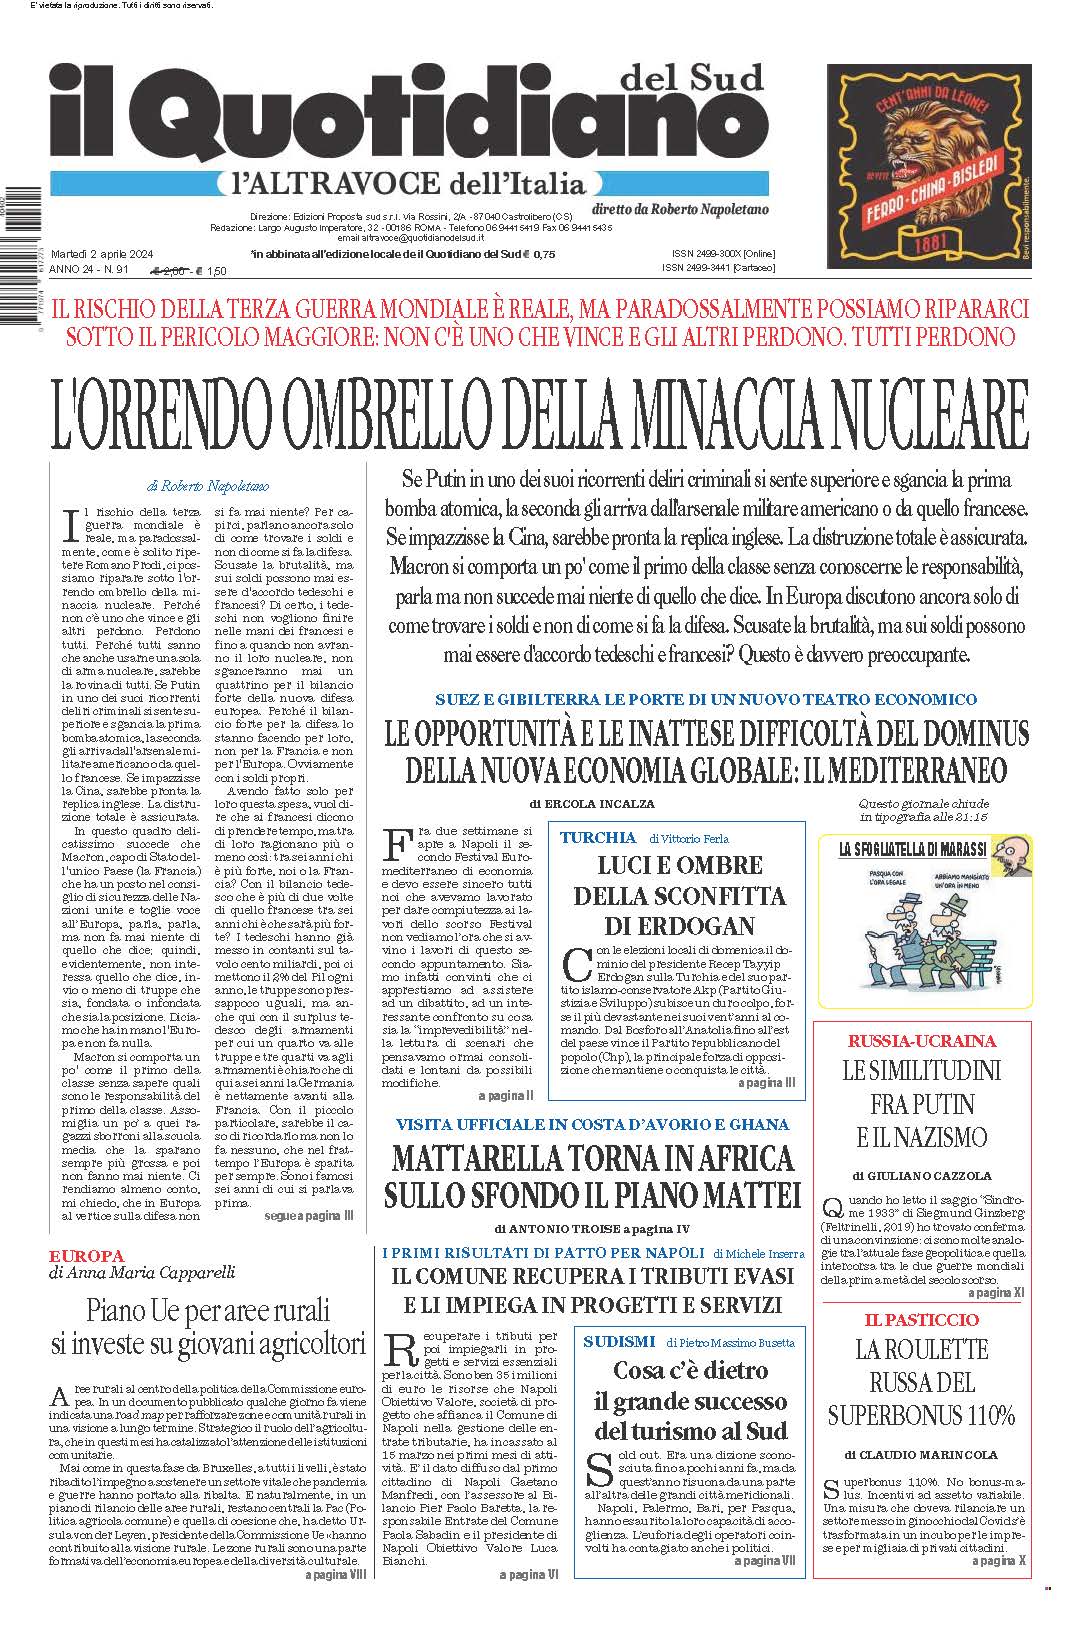 La prima pagina de l’ALTRAVOCE dell’ITALIA in edicola oggi